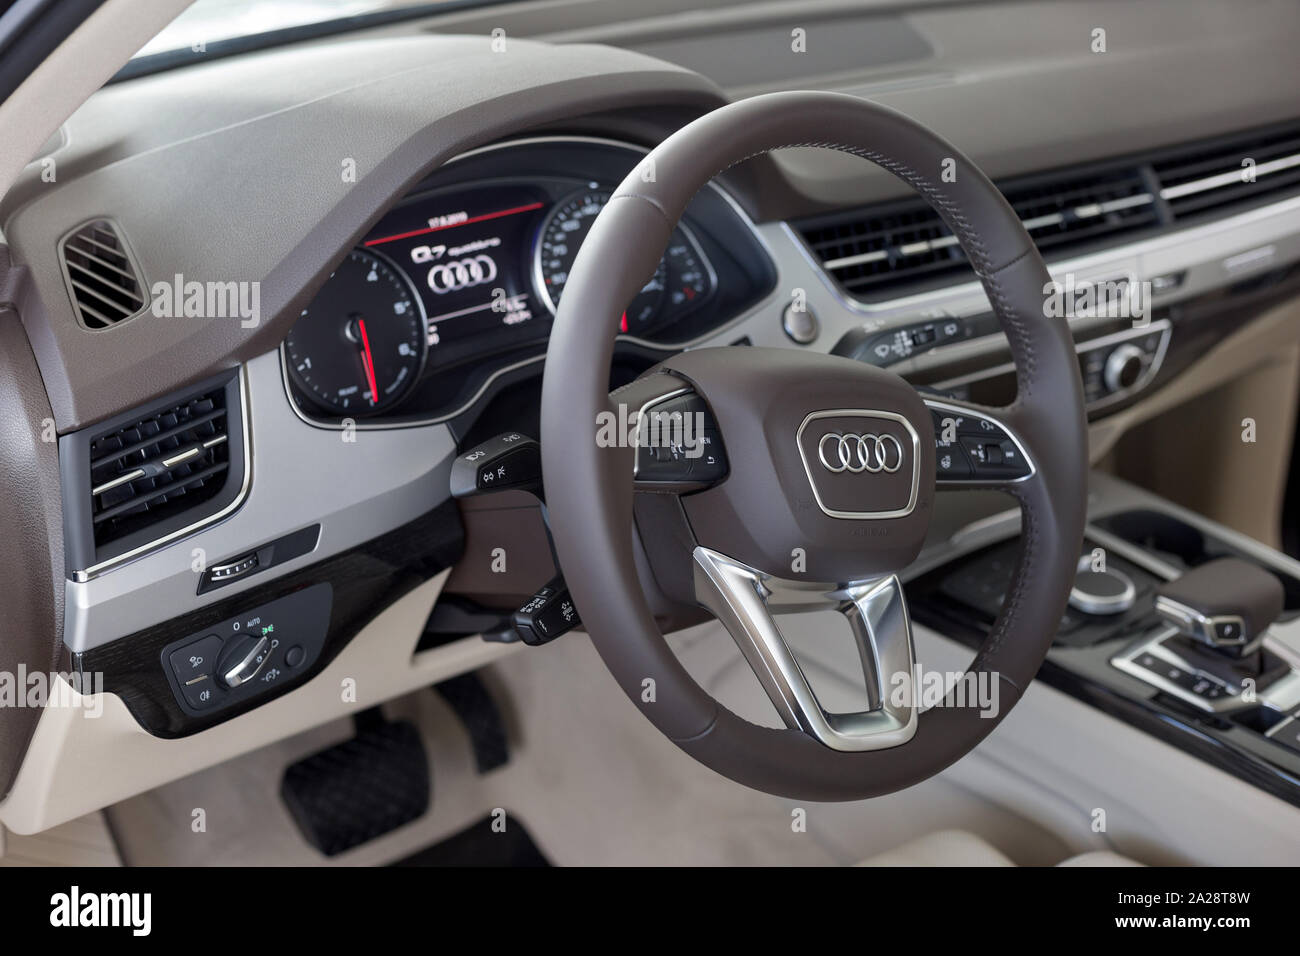 Russia, Izhevsk - Settembre 11, 2019: Audi showroom. Interno del nuovo Q7 Quattro con cambio automatico. Famoso marchio mondiale. Foto Stock